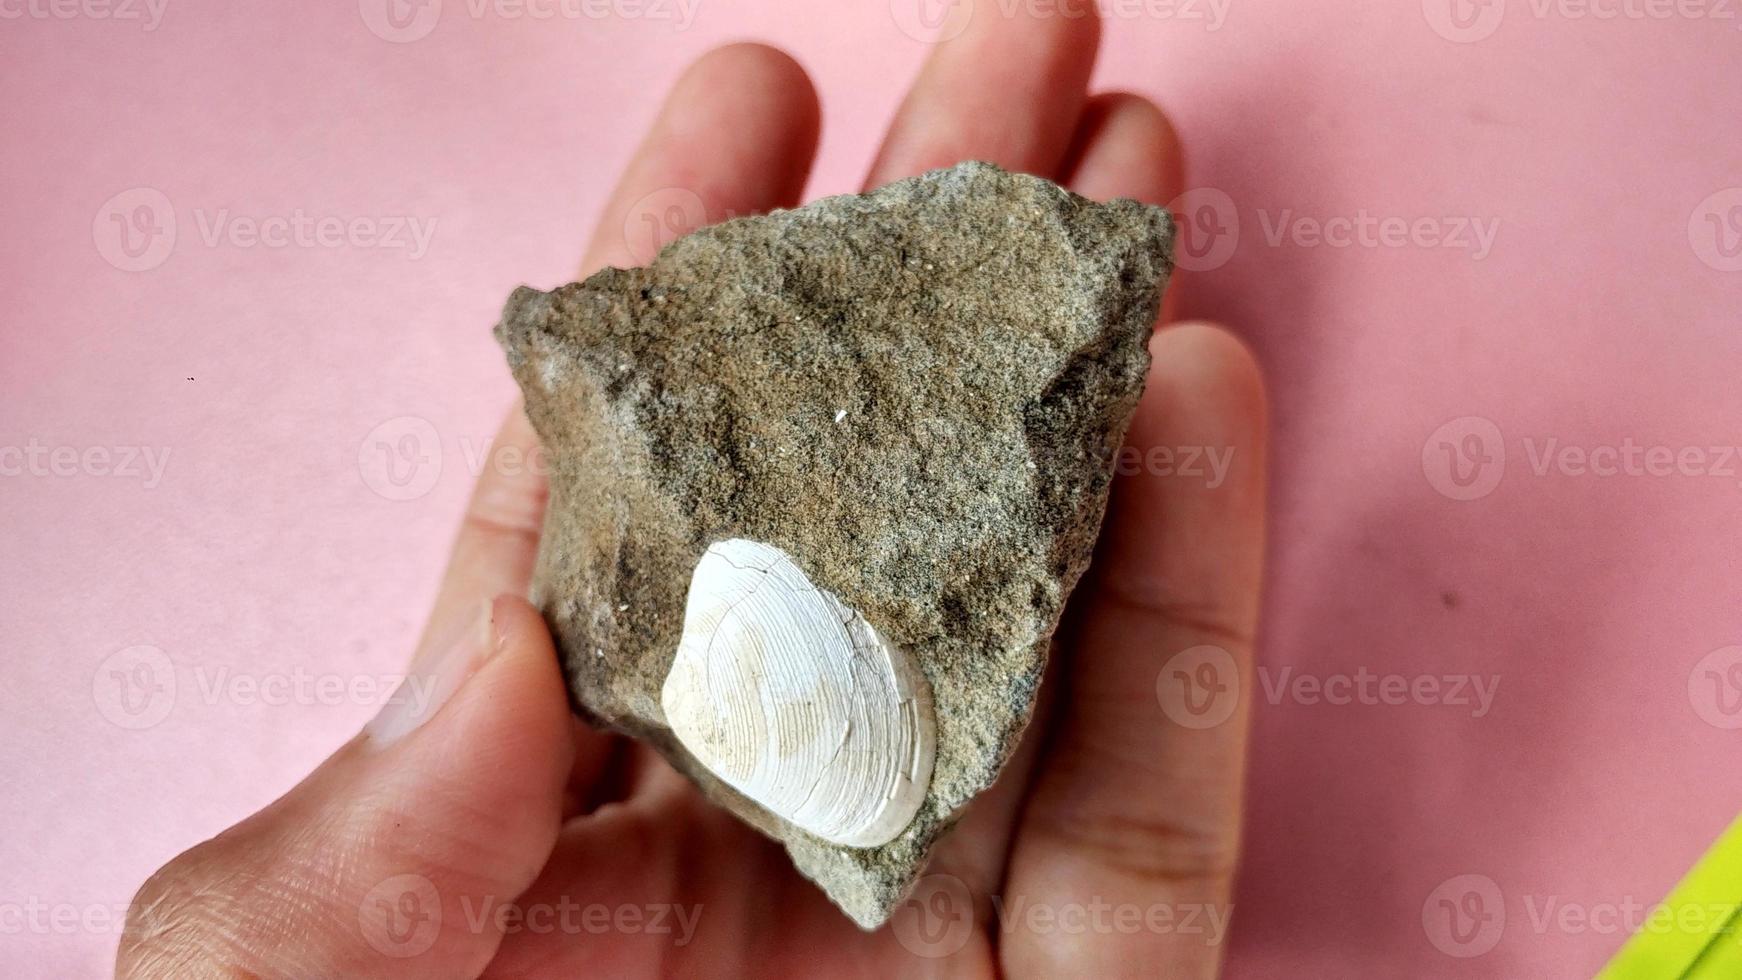 nummulite kalksteen, is een sedimentair gesteente dat miljoenen jaren geleden in ondiepe zeeën is afgezet. deze nummuliten zijn de koninkrijksrhizaria en zijn opgenomen in de phylum foraminifera. midden java foto